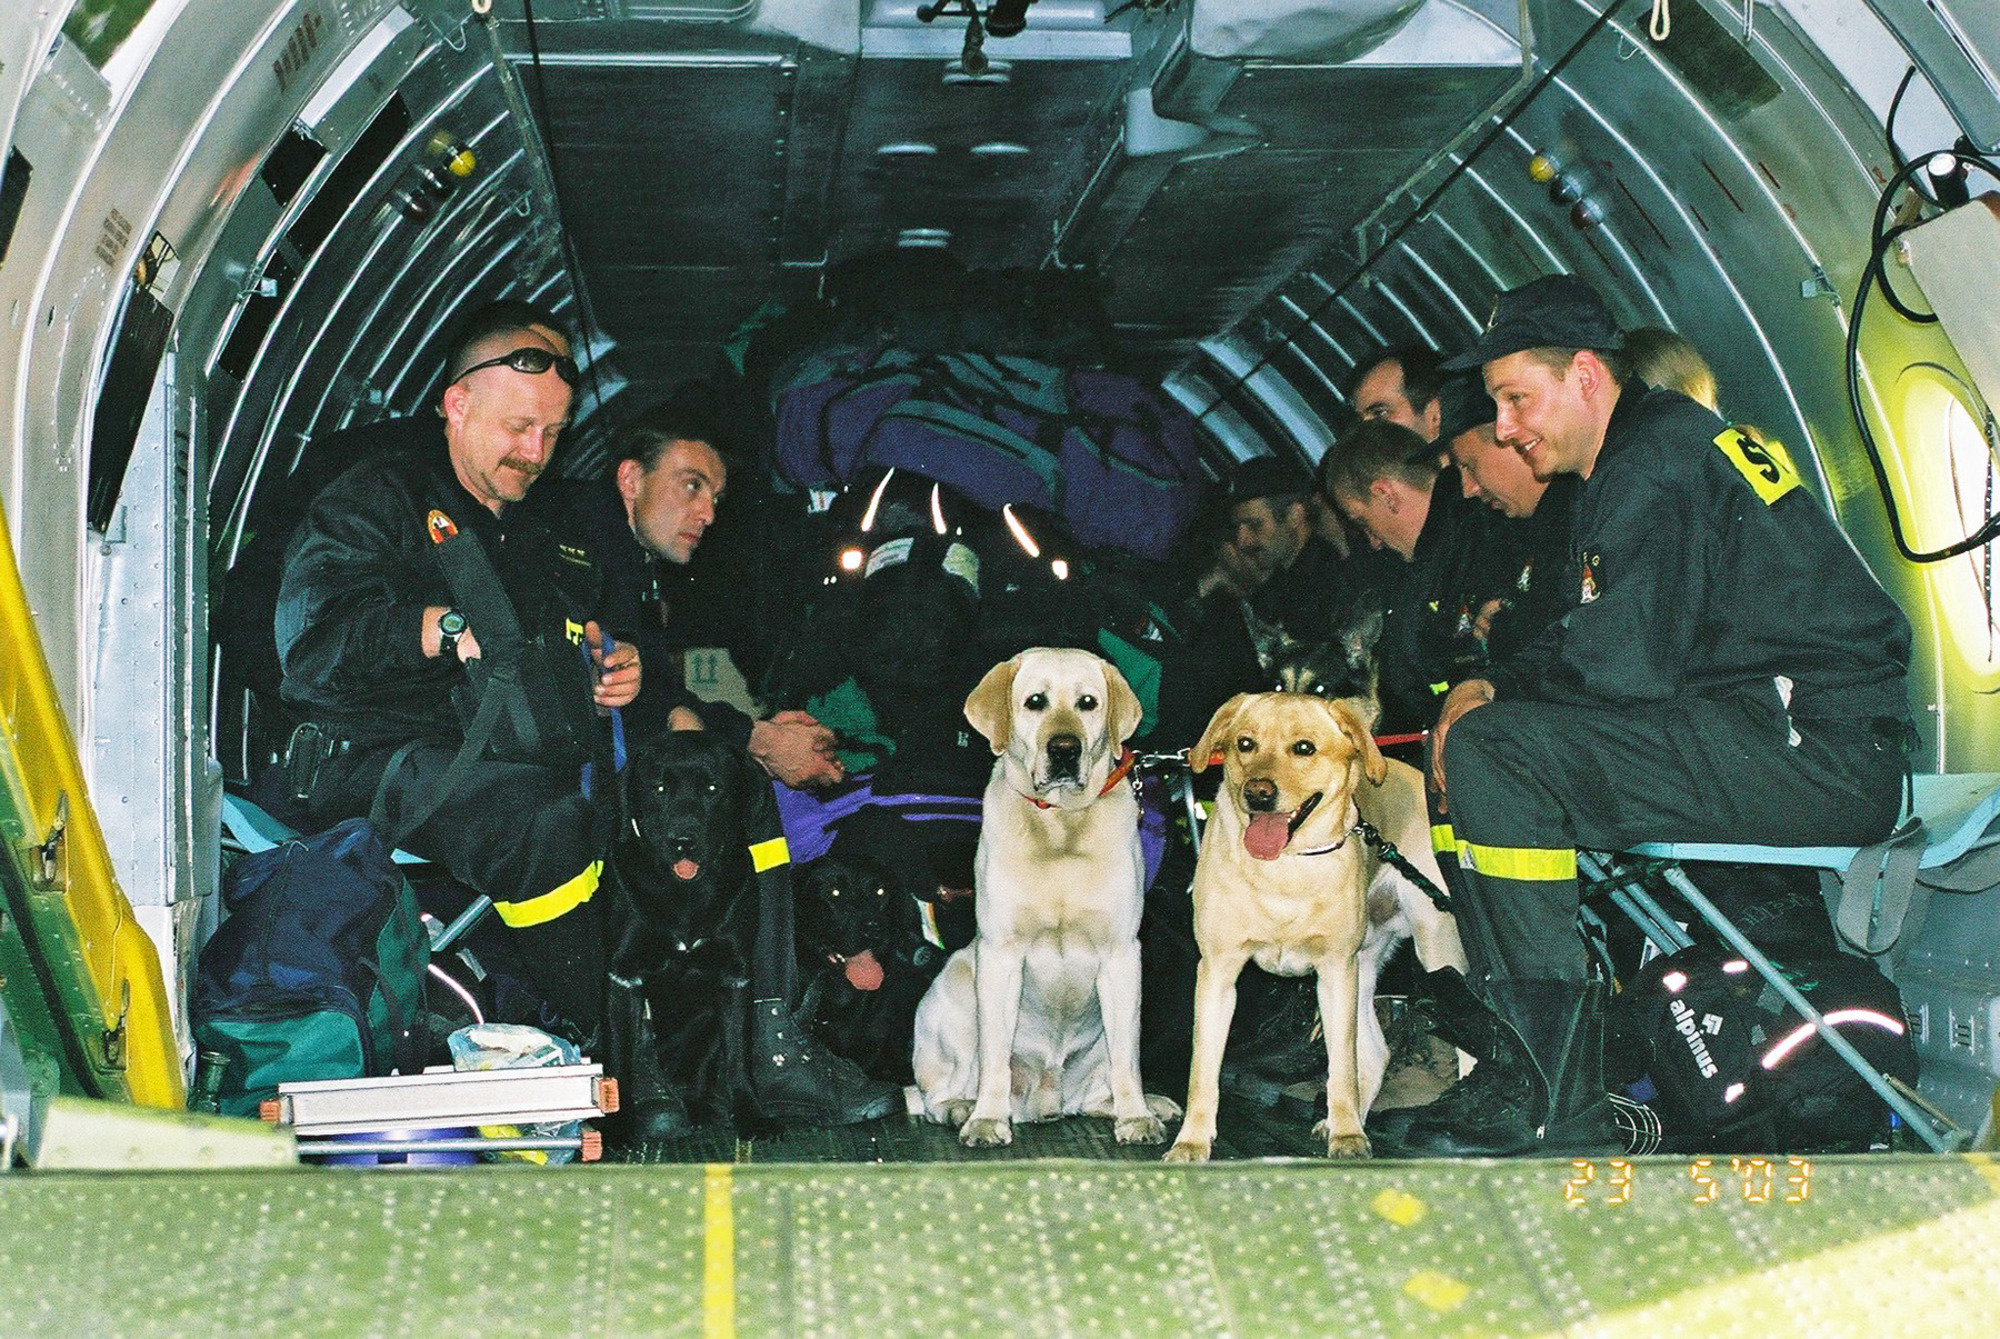 Ratownicy SGPR Gdańsk w trakcie działań ratowniczych w Algierii, 2003 r.  fot. archiwum SGPR „Gdańsk”